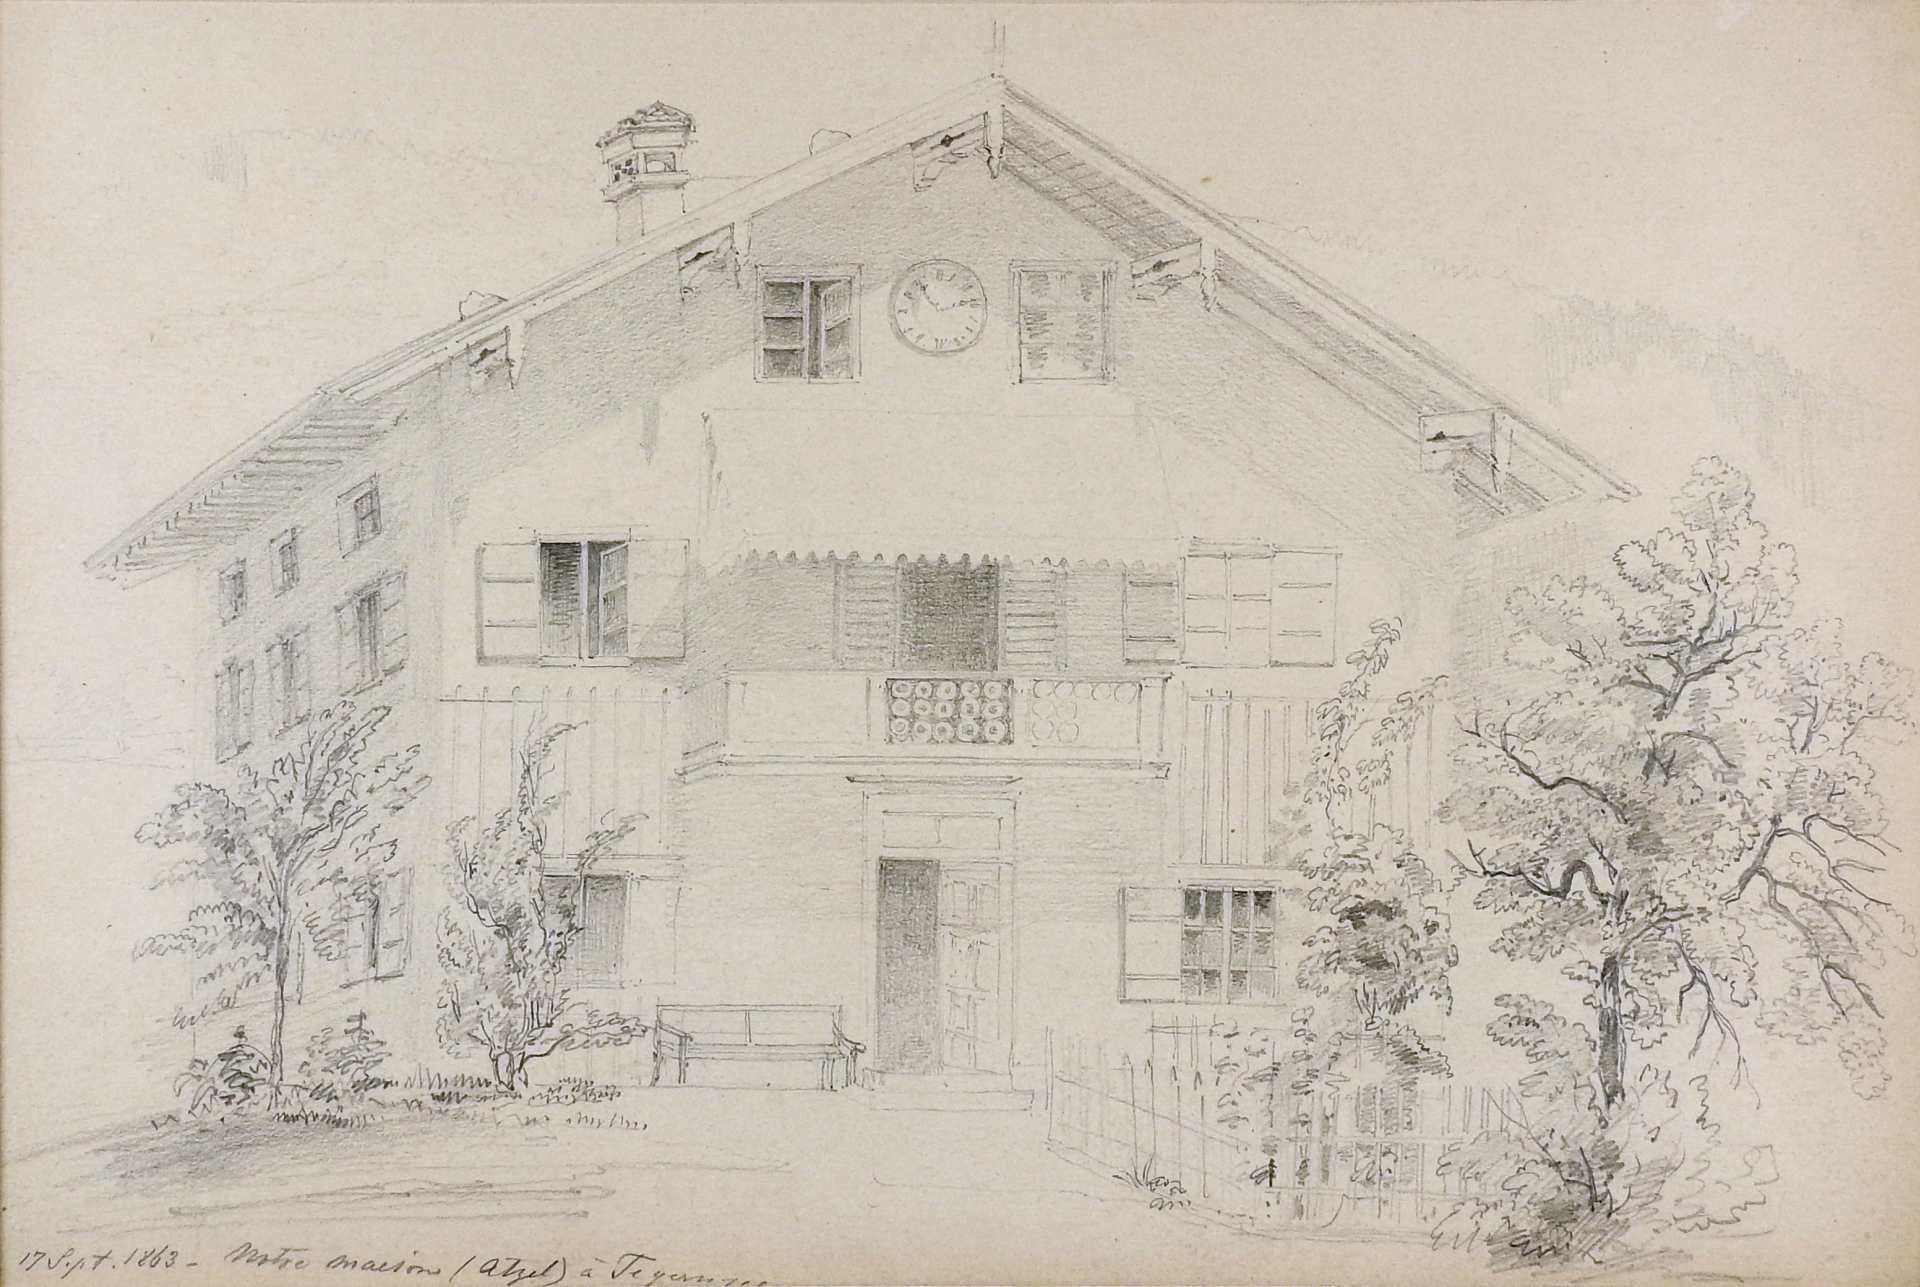 Feine Zeichnung der Tegernseer Rosenstraße Bleistift/Papier. Ansicht eines Hauses in